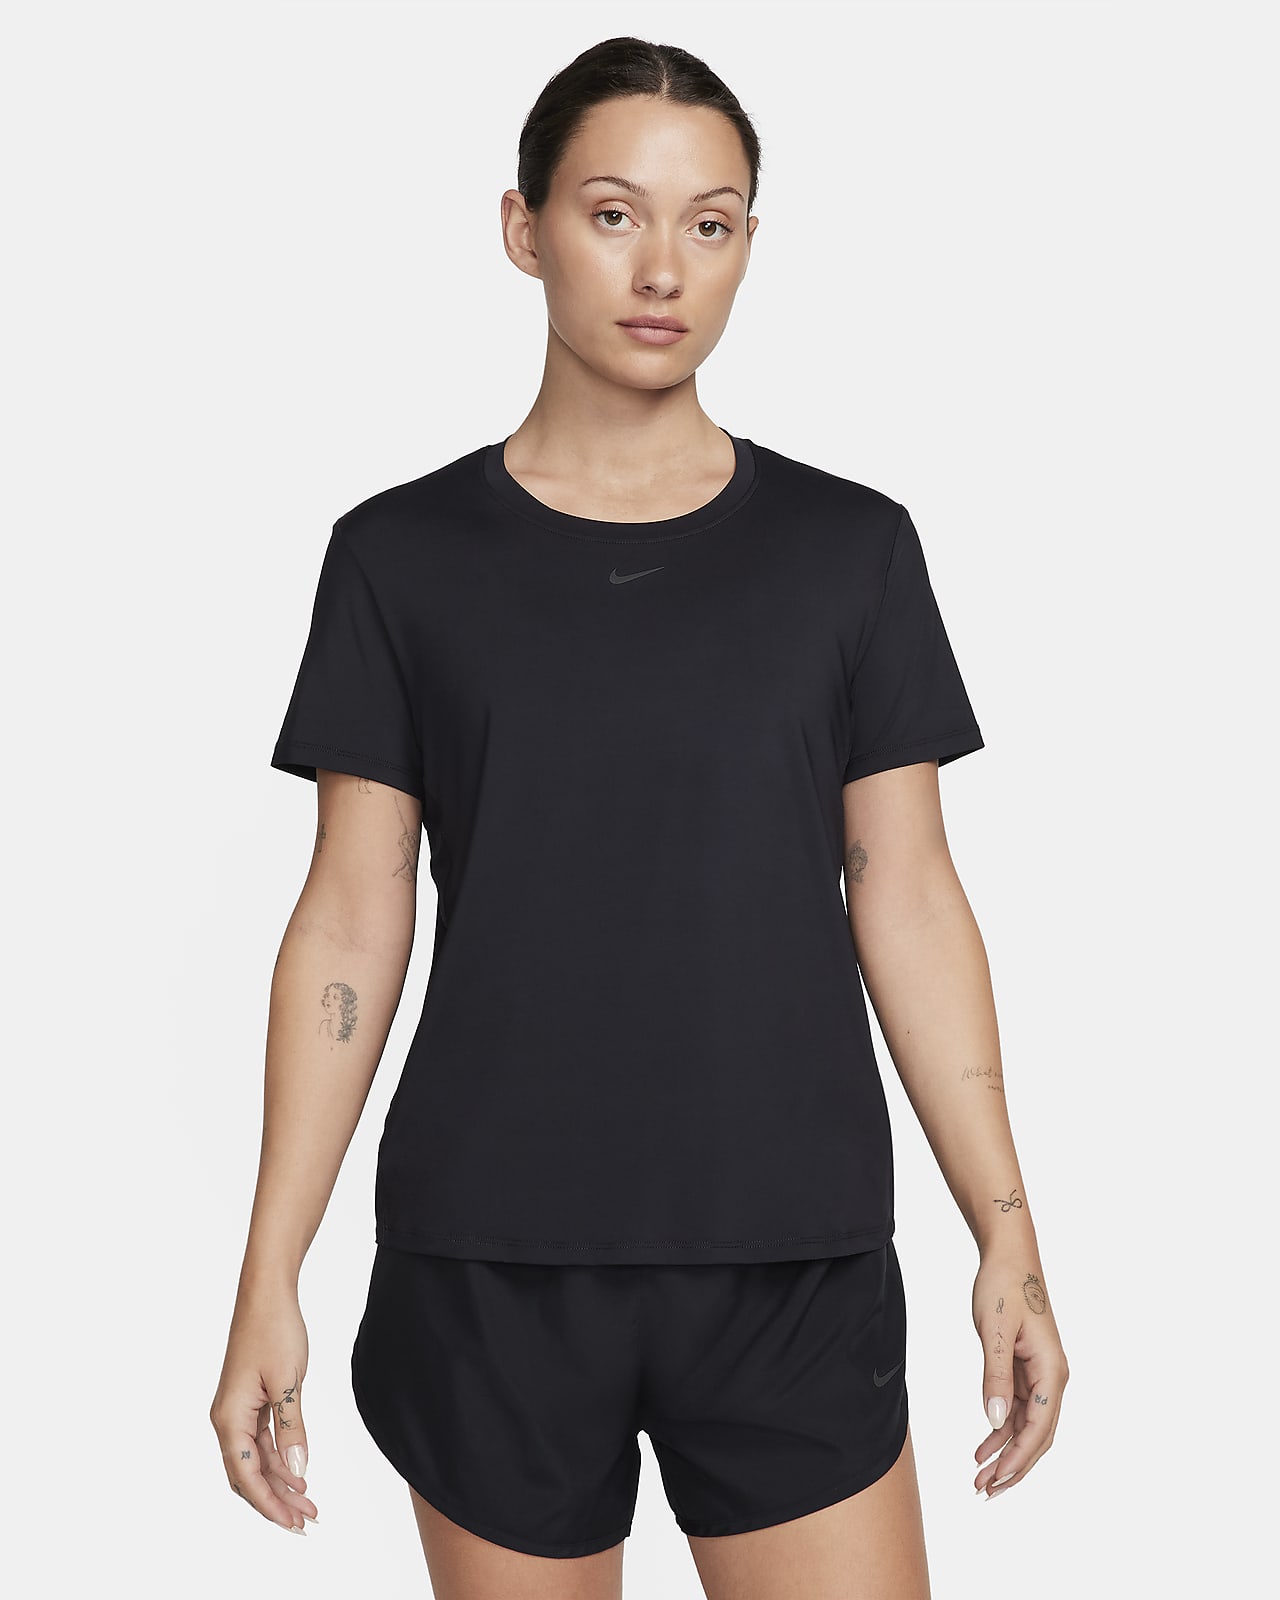 Dámské tričko Dri-Fit Nike One Classic s krátkým rukávem